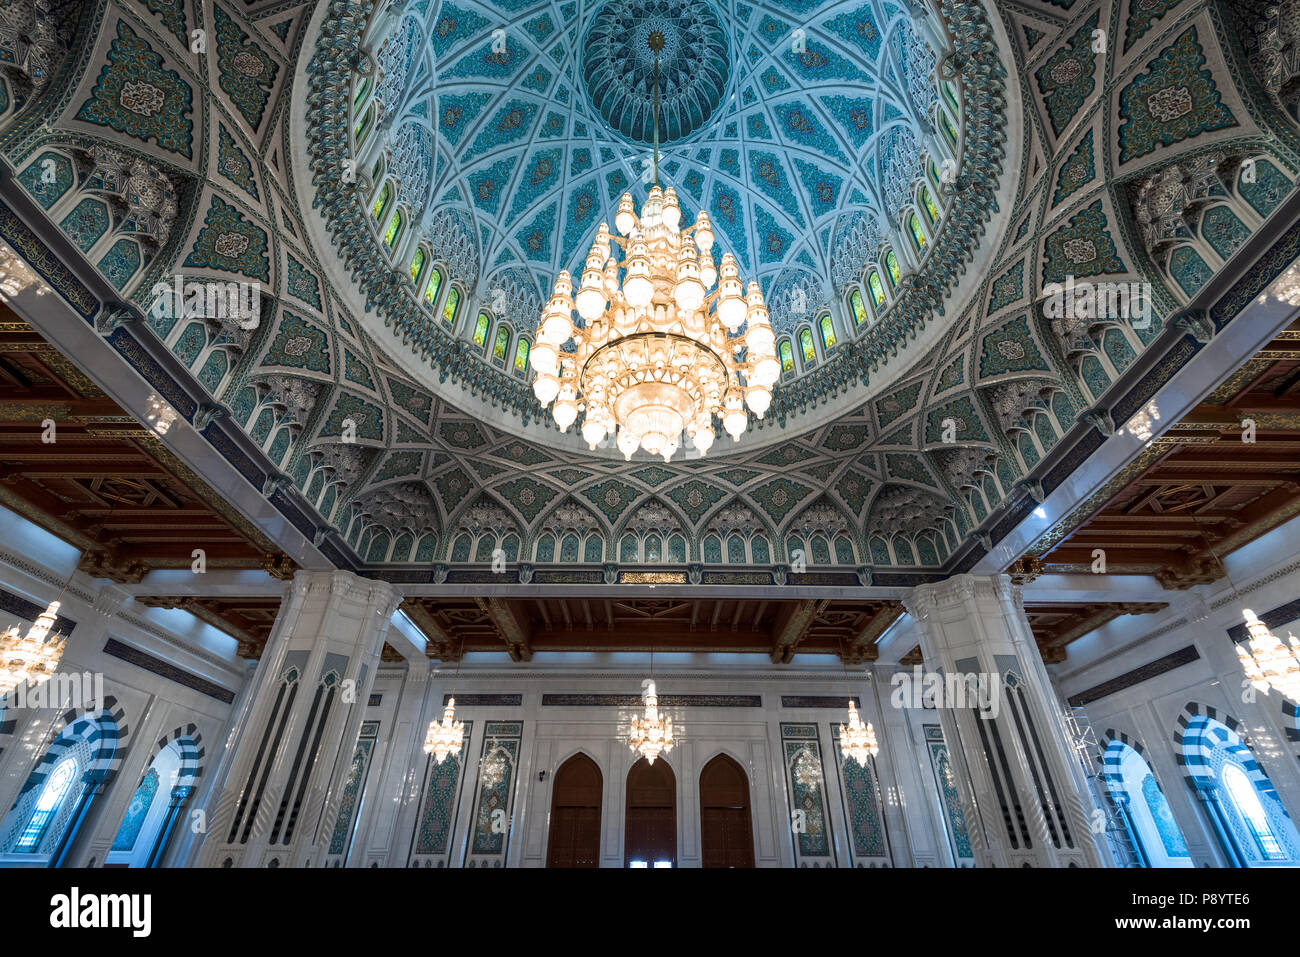 Intérieur de la salle de prière du Sultan Qaboos Grand Mosque in Muscat, Oman. Lustre est 14m de haut et était autrefois le plus grand du monde Banque D'Images